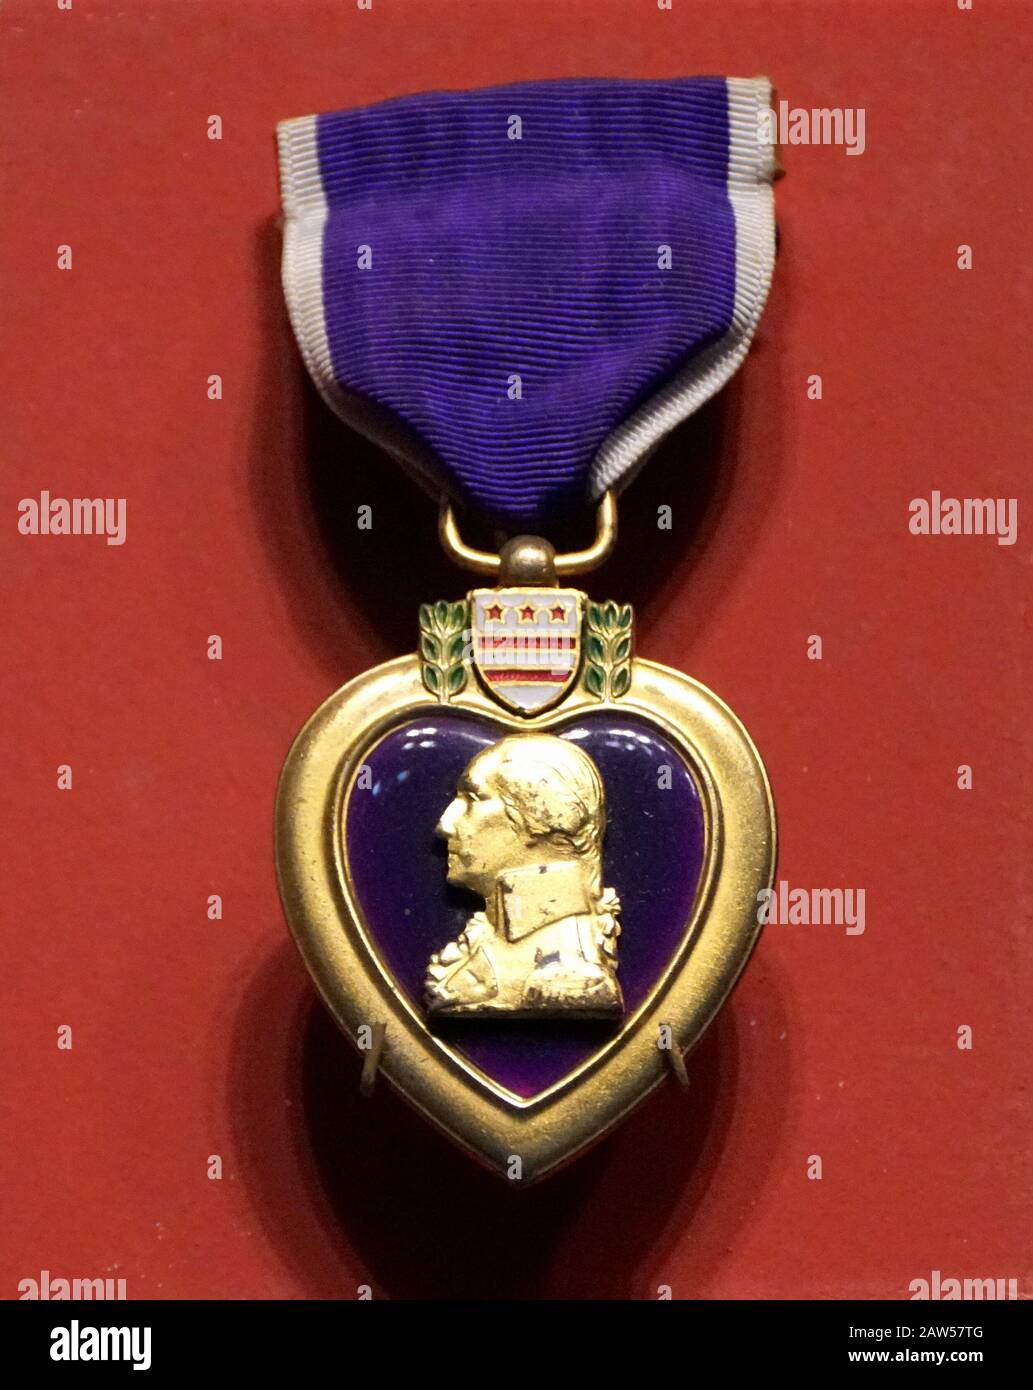 Nueva Orleans, Louisiana, EE.UU. - 5 de febrero de 2020 - la medalla de decoración militar Purple Heart en un fondo rojo aislado Foto de stock